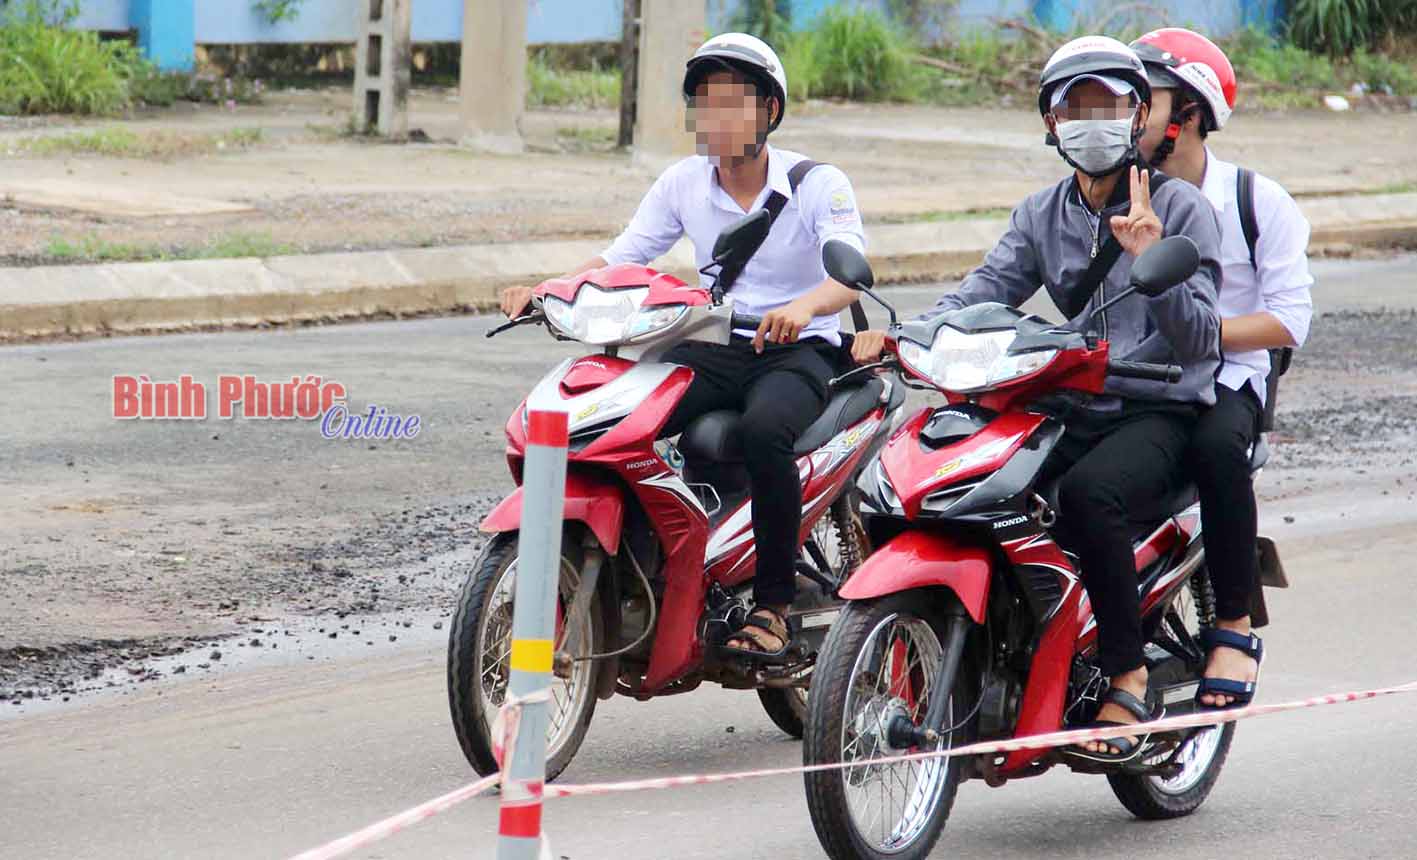 11 giờ 15 phút ngày 13-9, sau hồi trống kết thúc buổi học, nhiều học sinh Trường THPT Đồng Xoài đi về bằng xe phân khối lớn.